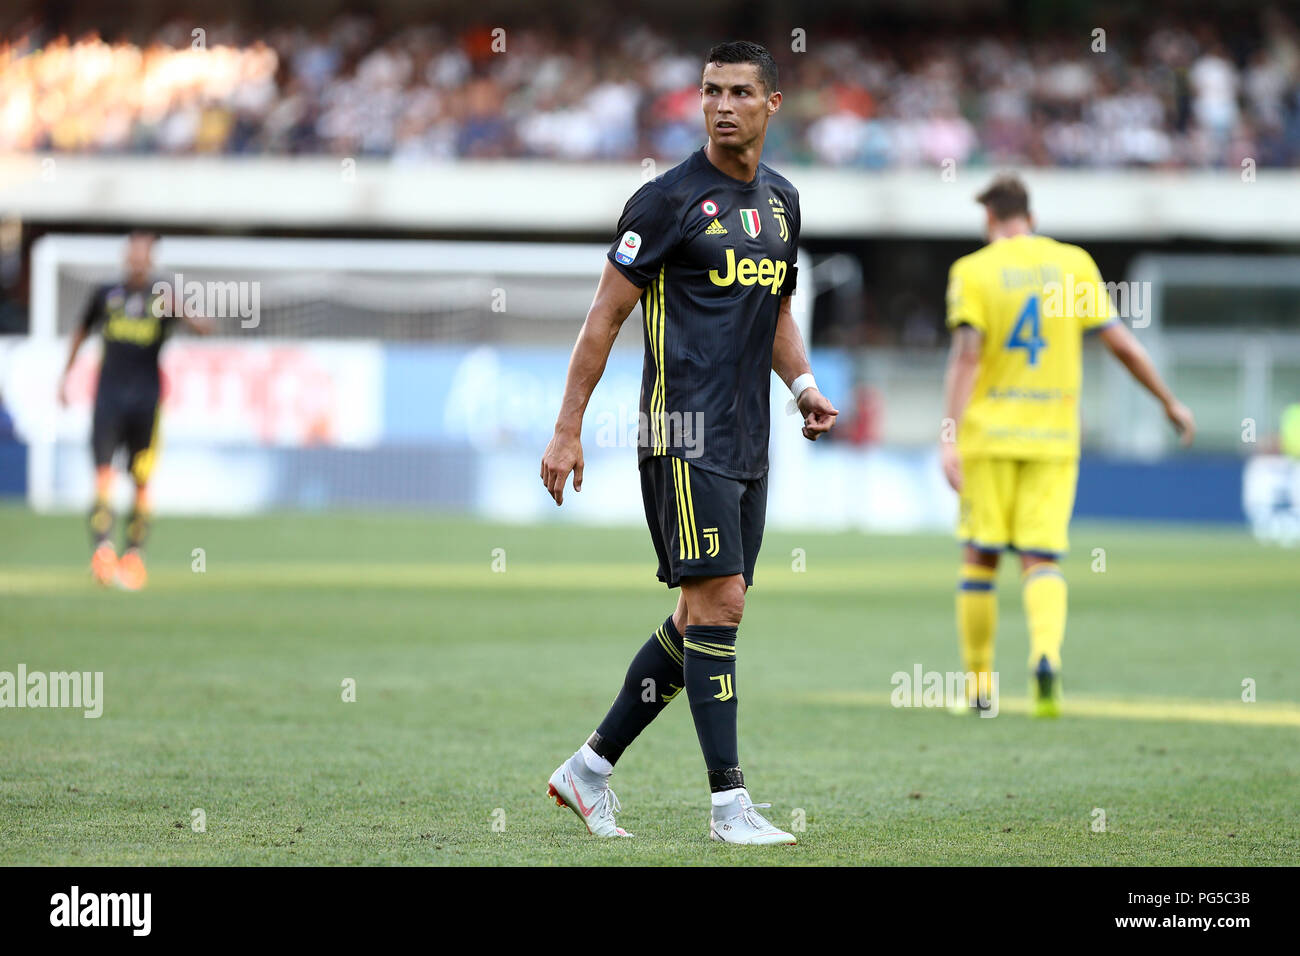 Cristiano Ronaldo de la Juventus en action au cours de la série d'un match de football entre l'Ac Chievo Vérone et la Juventus. Banque D'Images